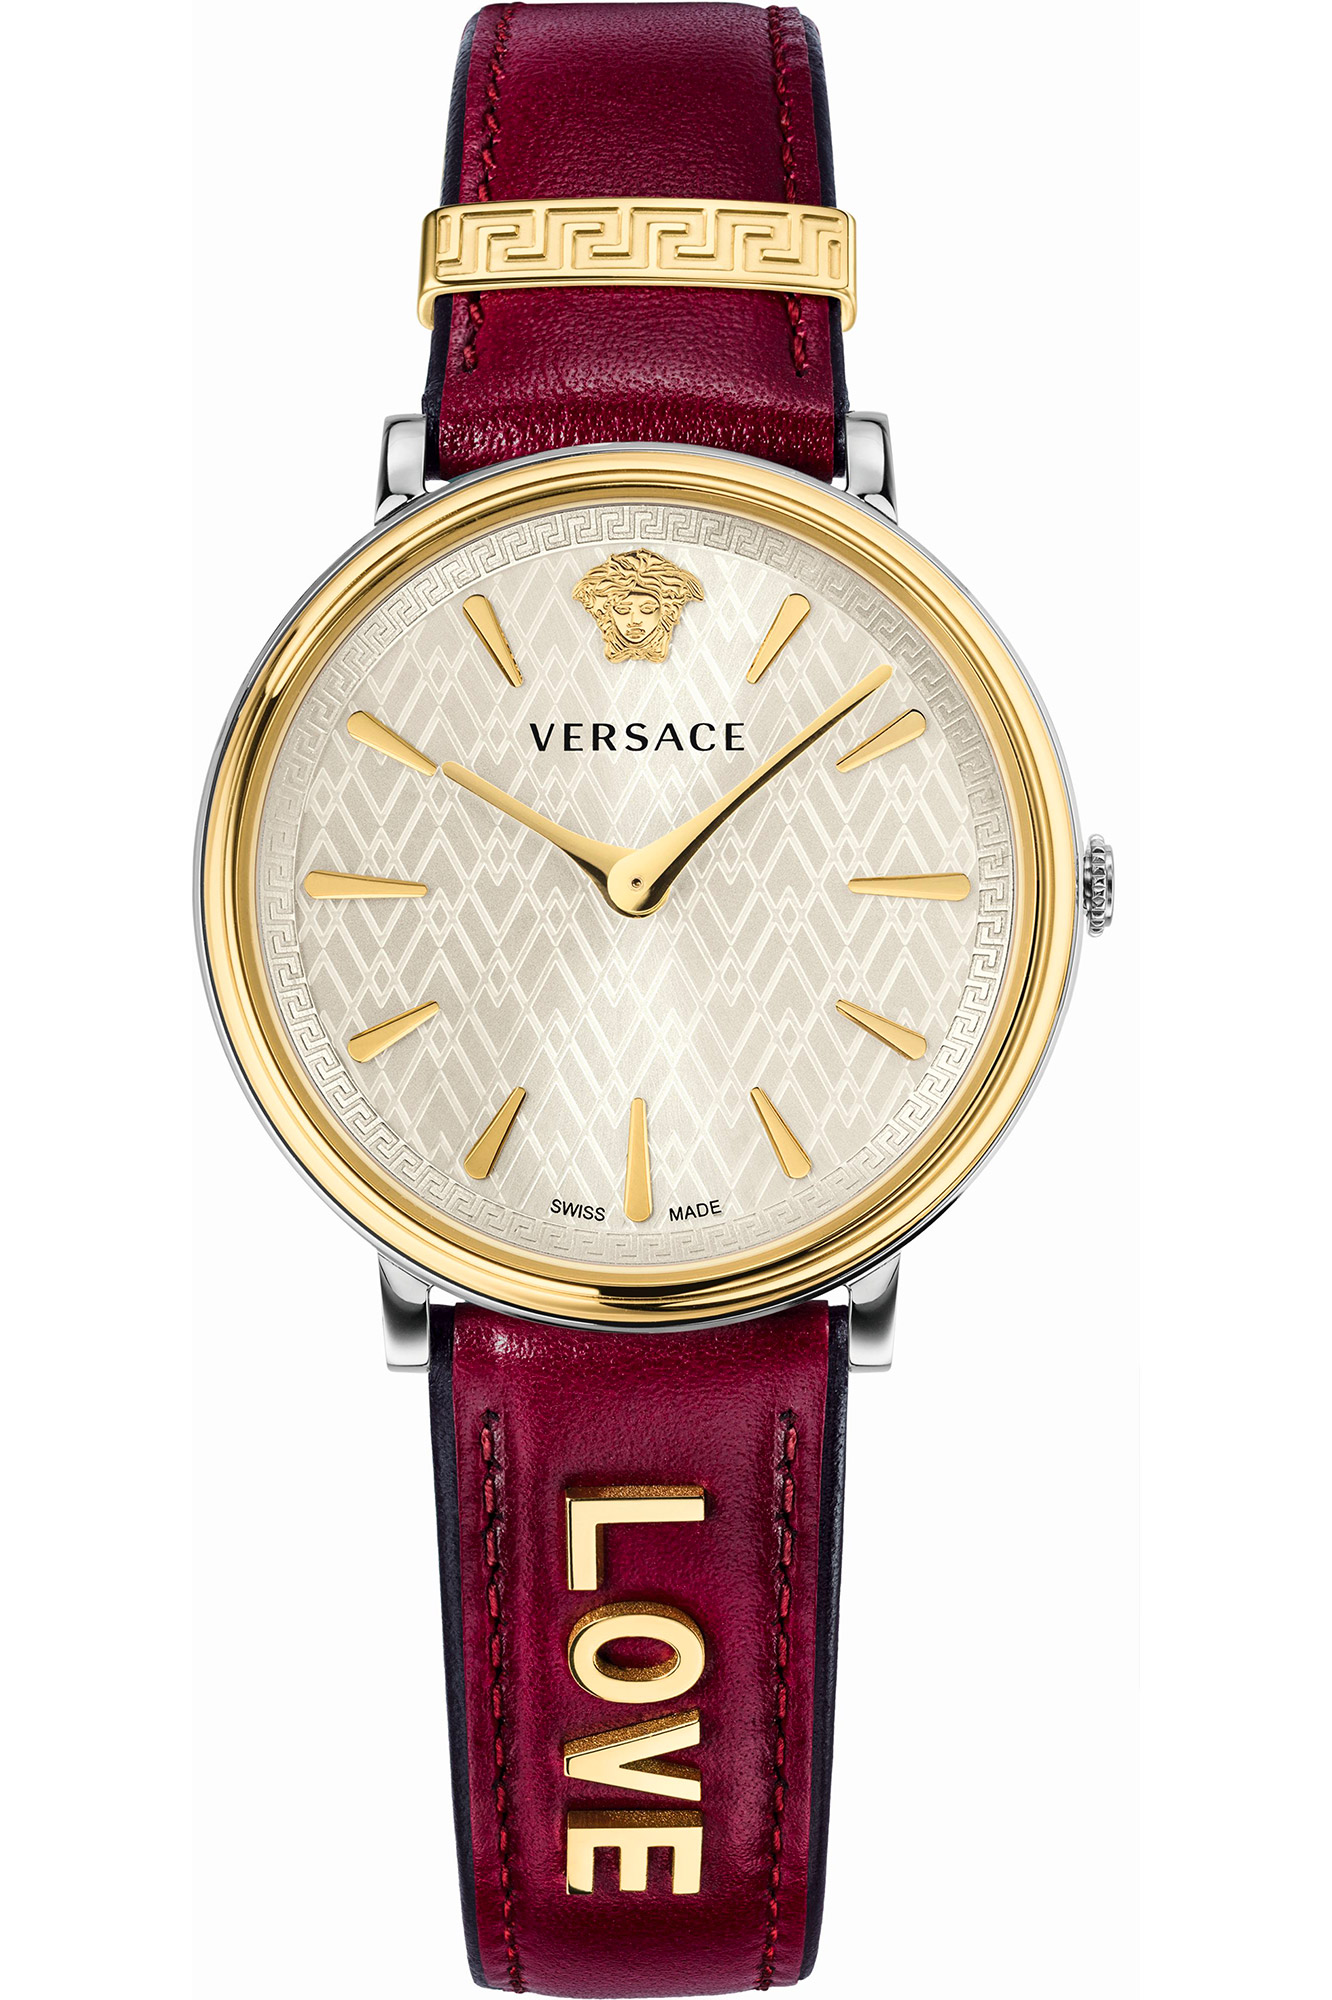 Watch Versace vbp020017